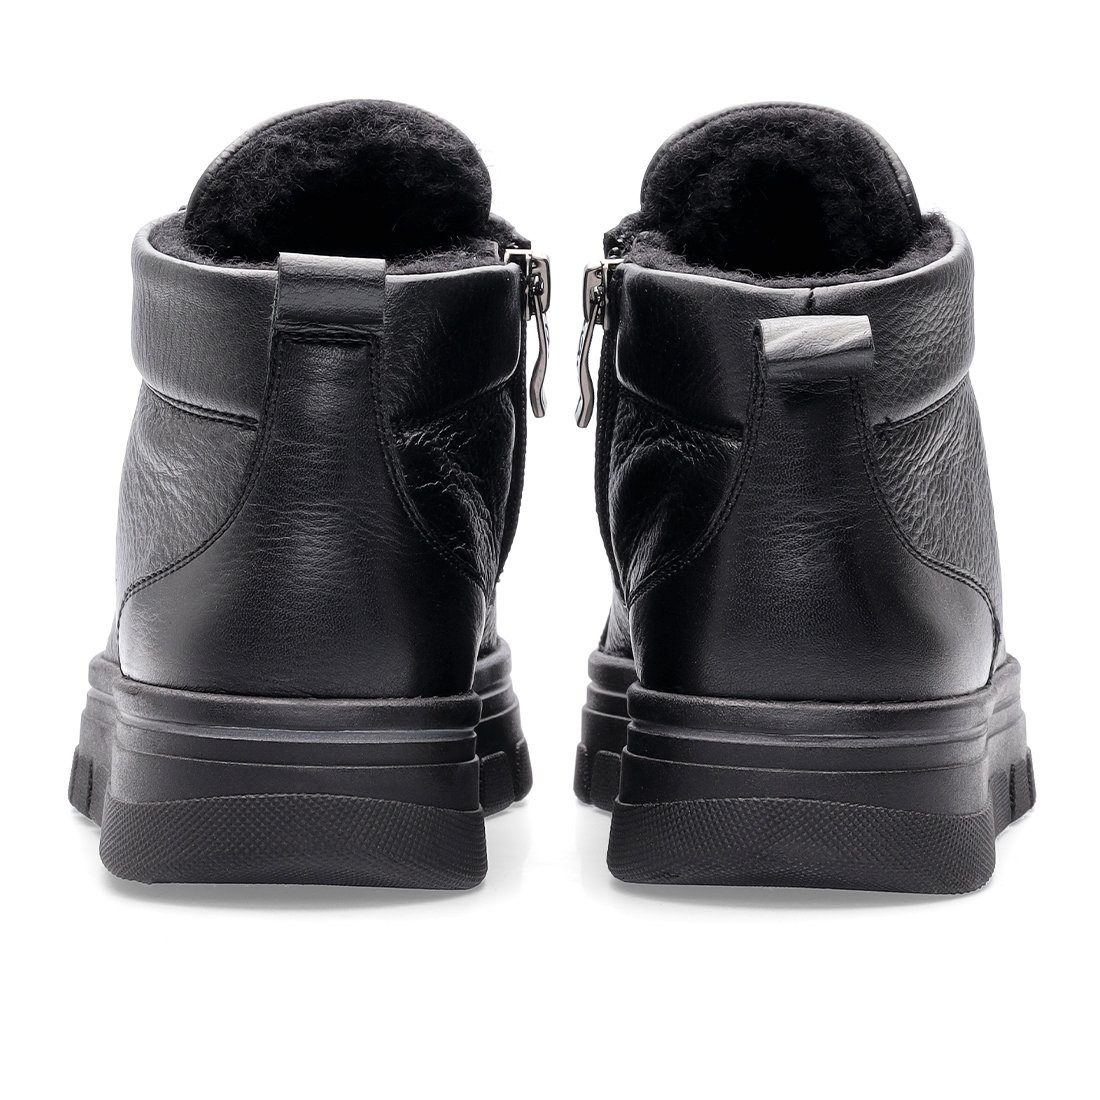 Ara Ara Sneaker Schuhe, 049779 - Canberra Glattleder Sneaker schwarz Damen